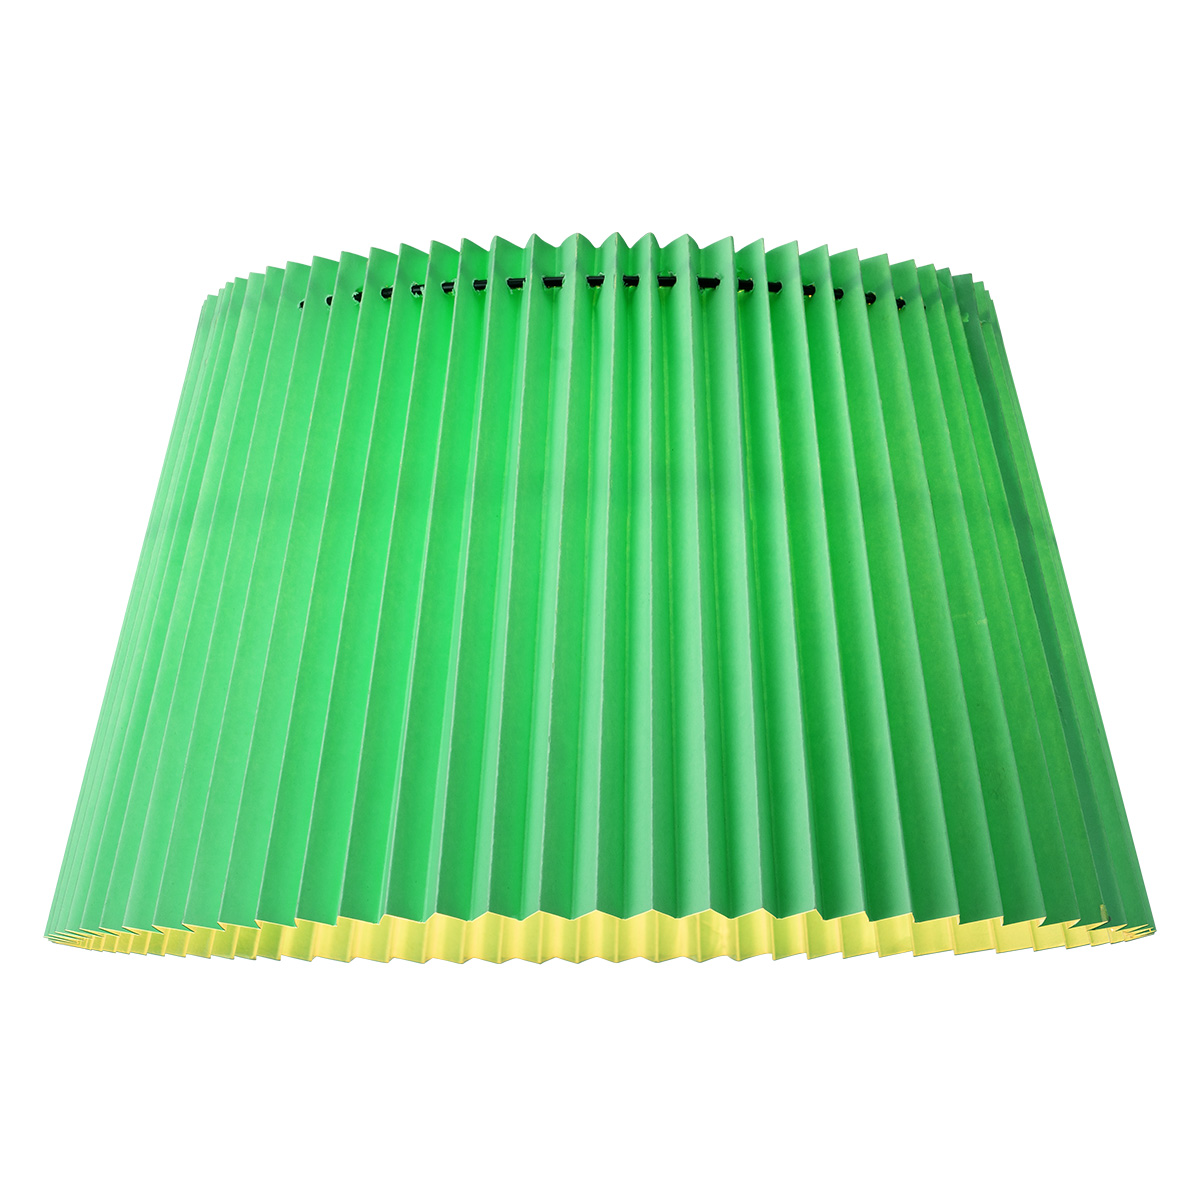 Tangla lighting - TLS7457-01GN - Lampshade - metal and paper - green - taper - diameter 40cm - E27